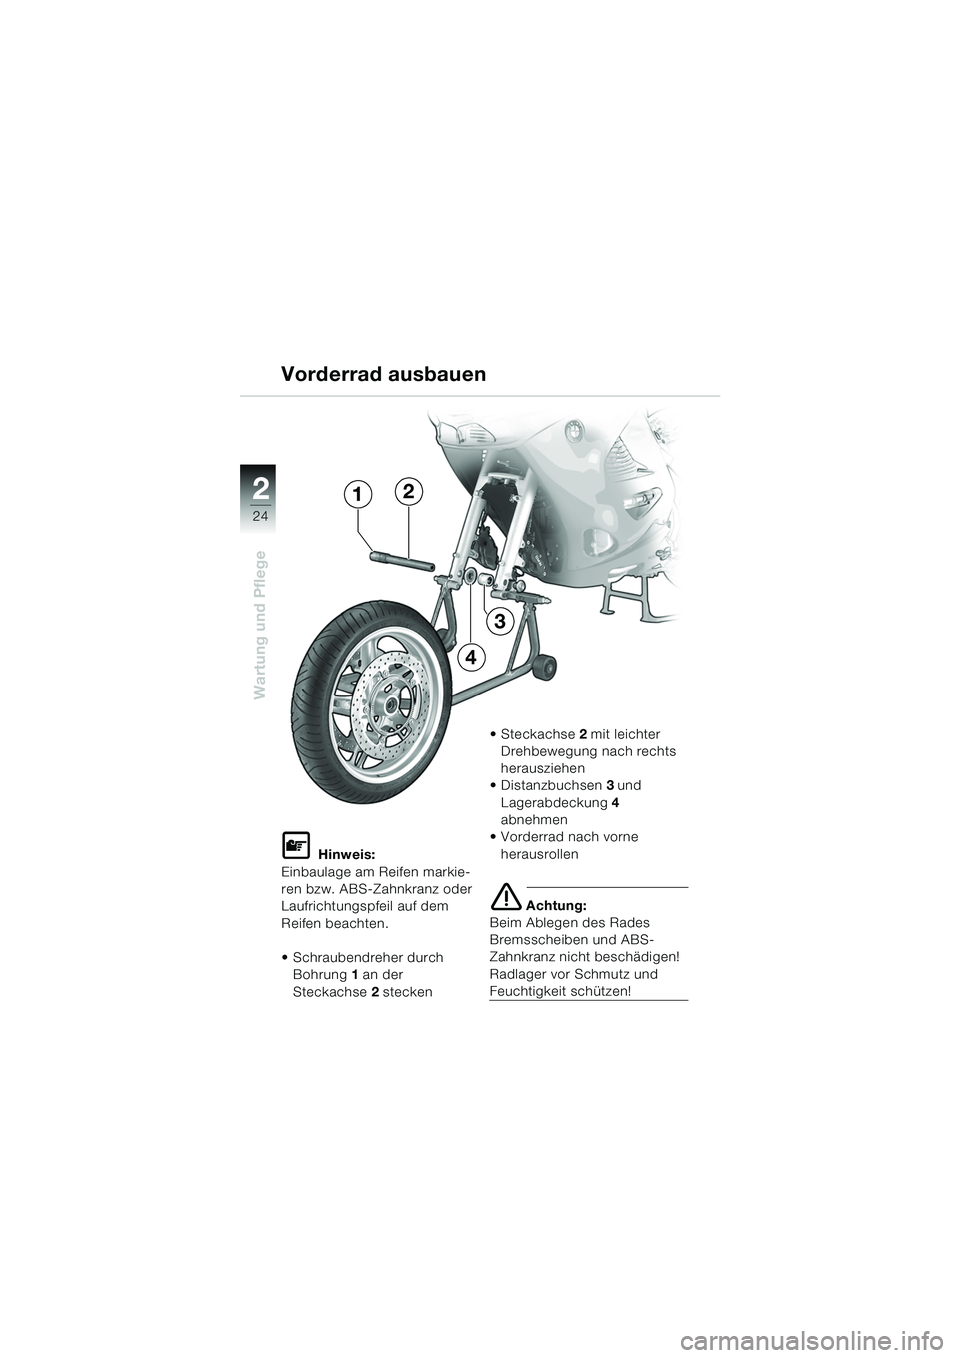 BMW MOTORRAD K 1200 RS 2004  Betriebsanleitung (in German) 24
Wartung und Pflege
2
L Hinweis:
Einbaulage am Reifen markie-
ren bzw. ABS-Zahnkranz oder 
Laufrichtungspfeil auf dem 
Reifen beachten.
 Schraubendreher durch  Bohrung 1 an der 
Steckachse 2 stecke